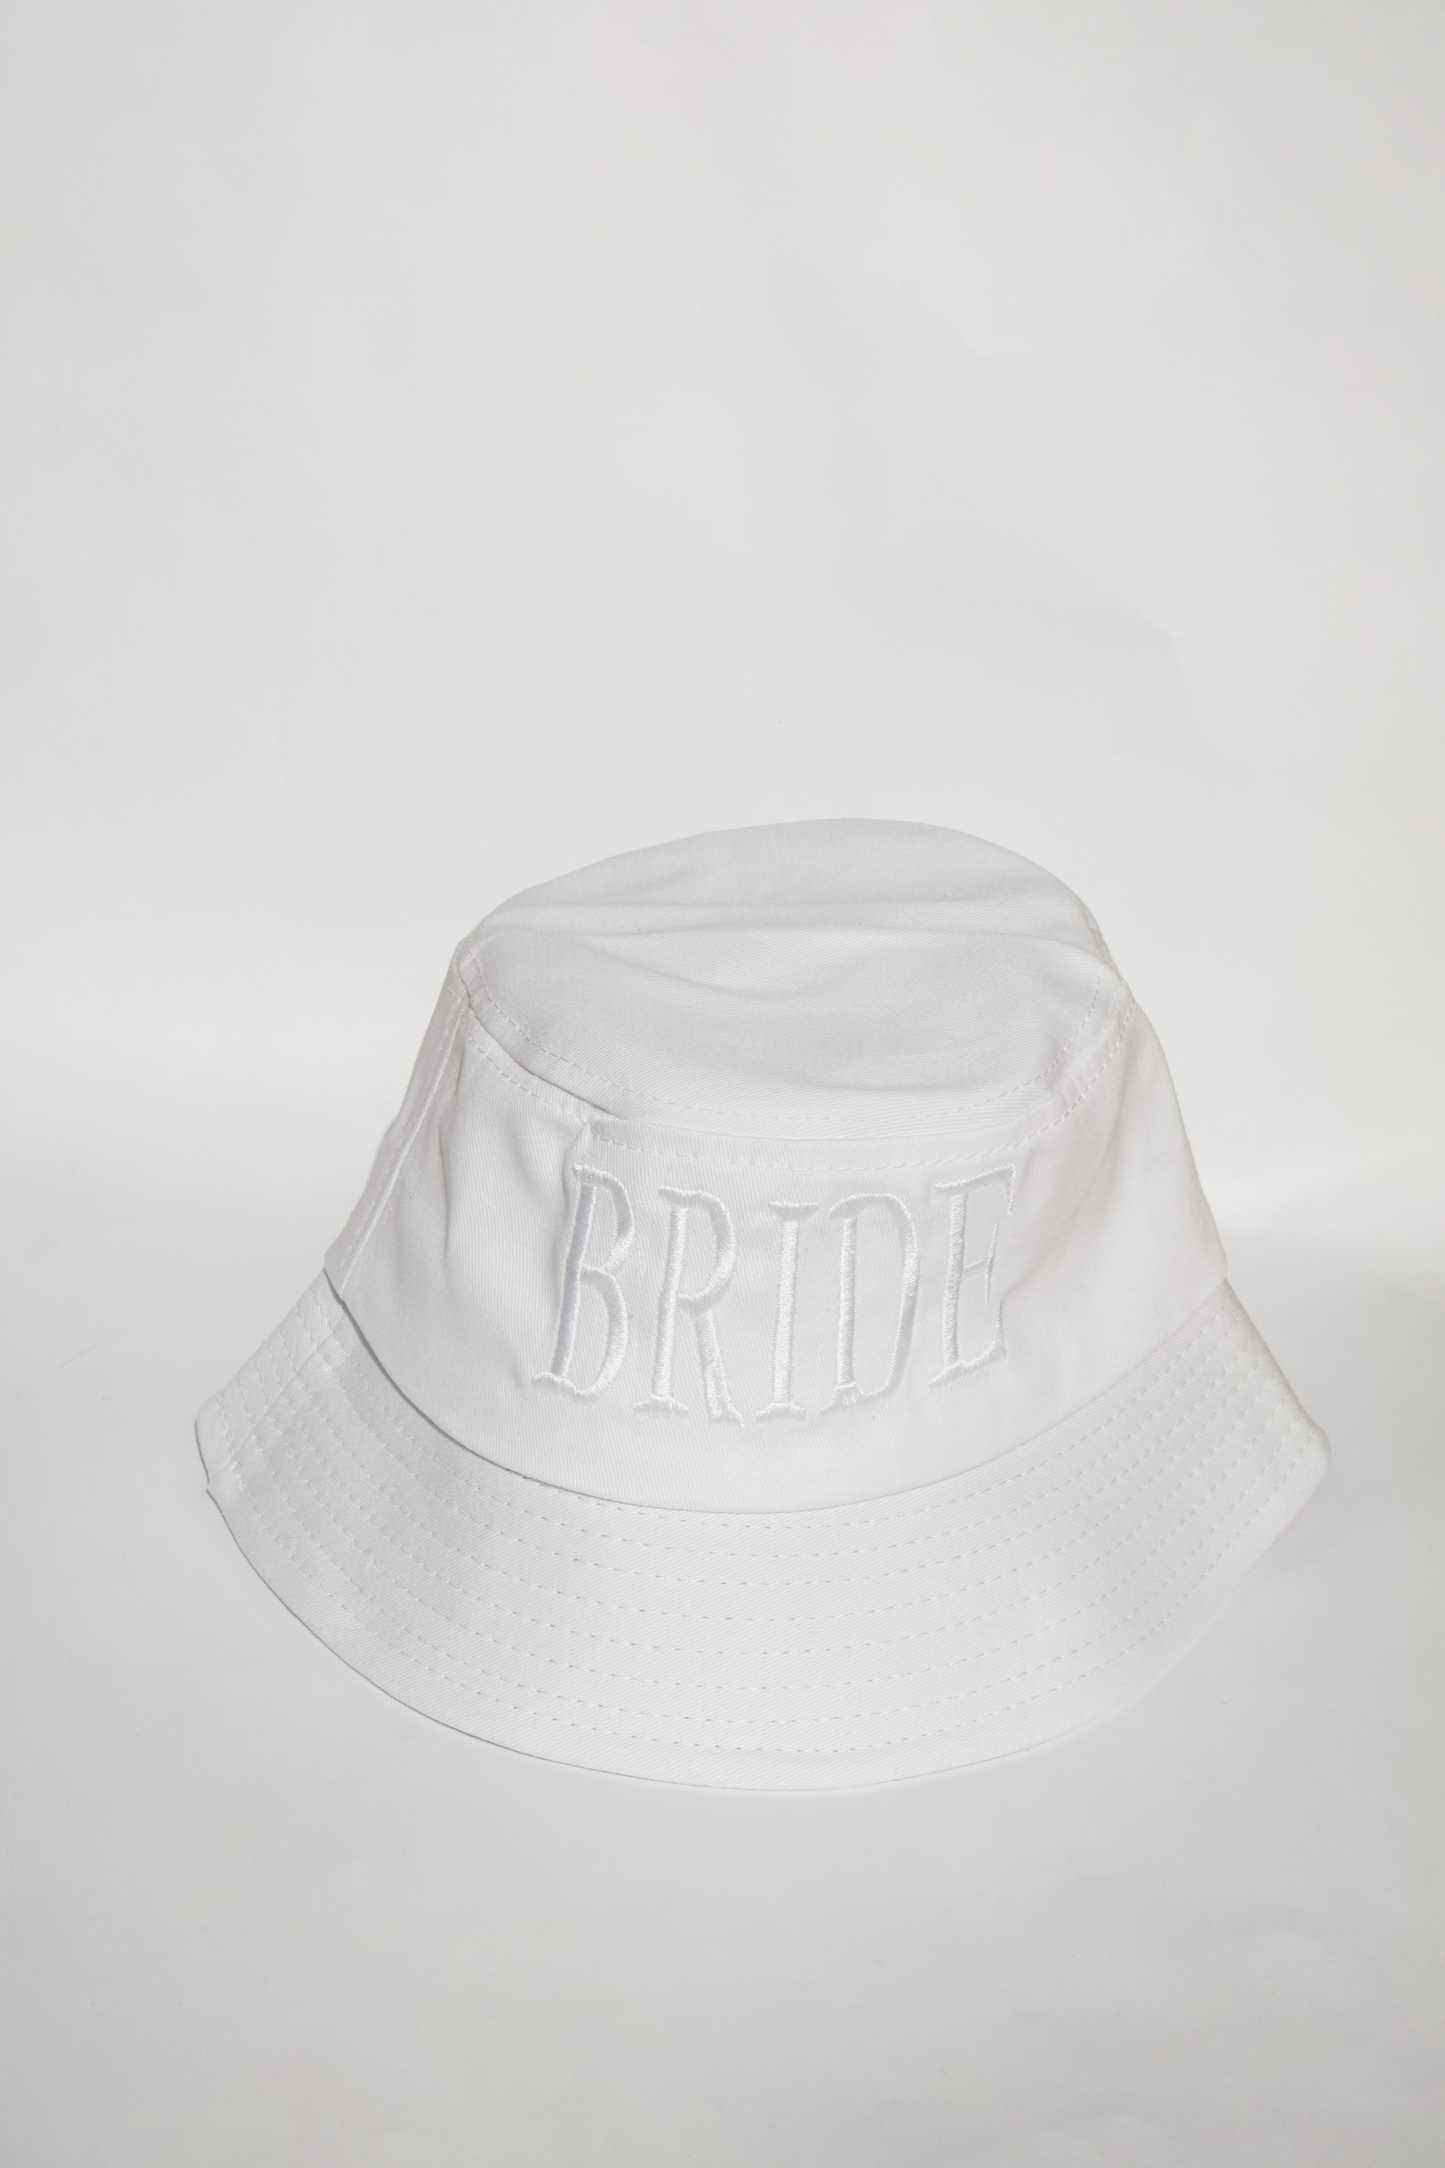 Bucket hat blanco con "Bride" bordado en blanco